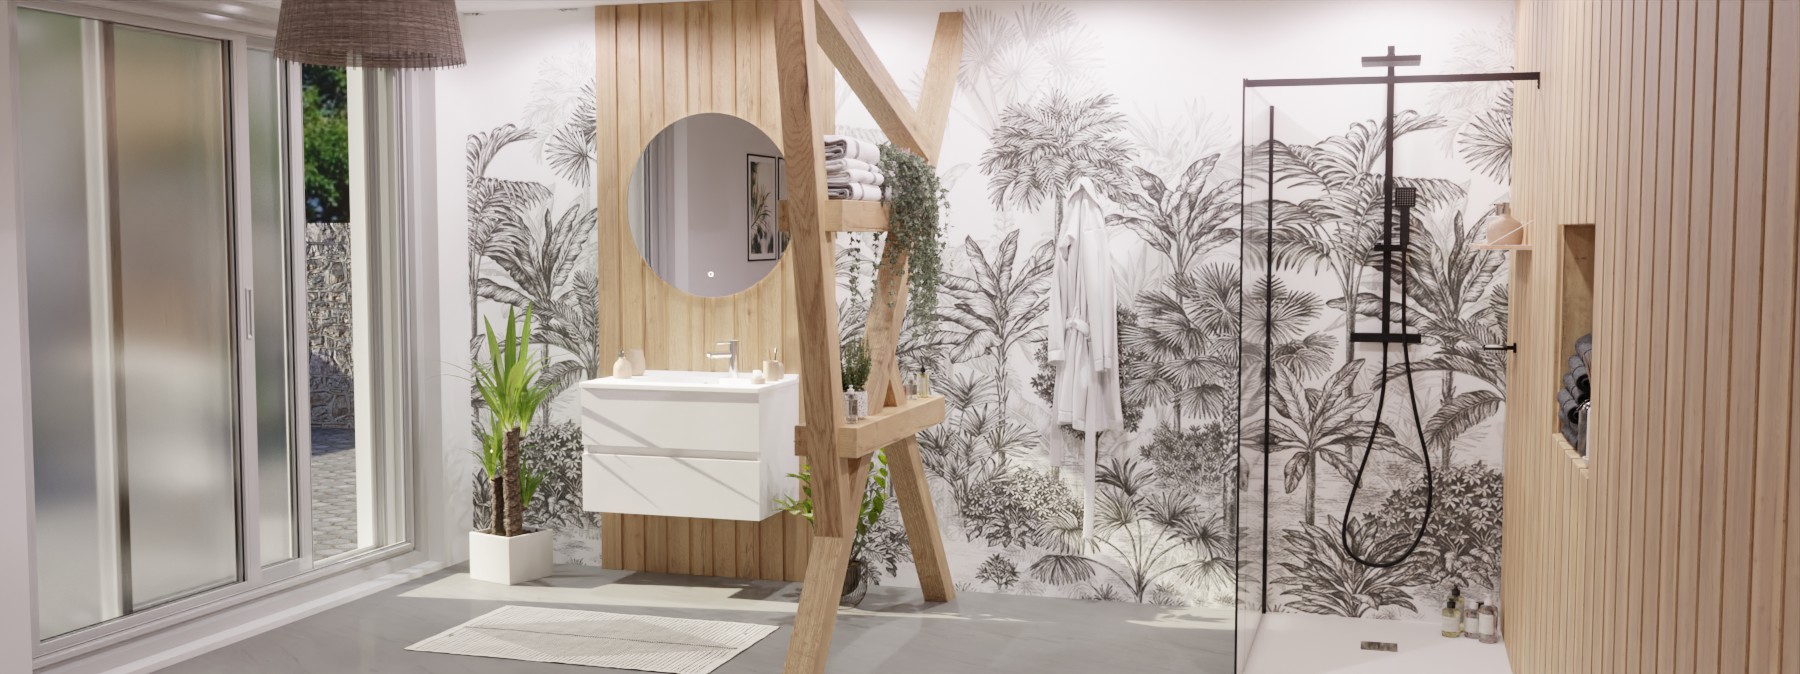 Salle de bain avec papier peint panoramique impression jungle